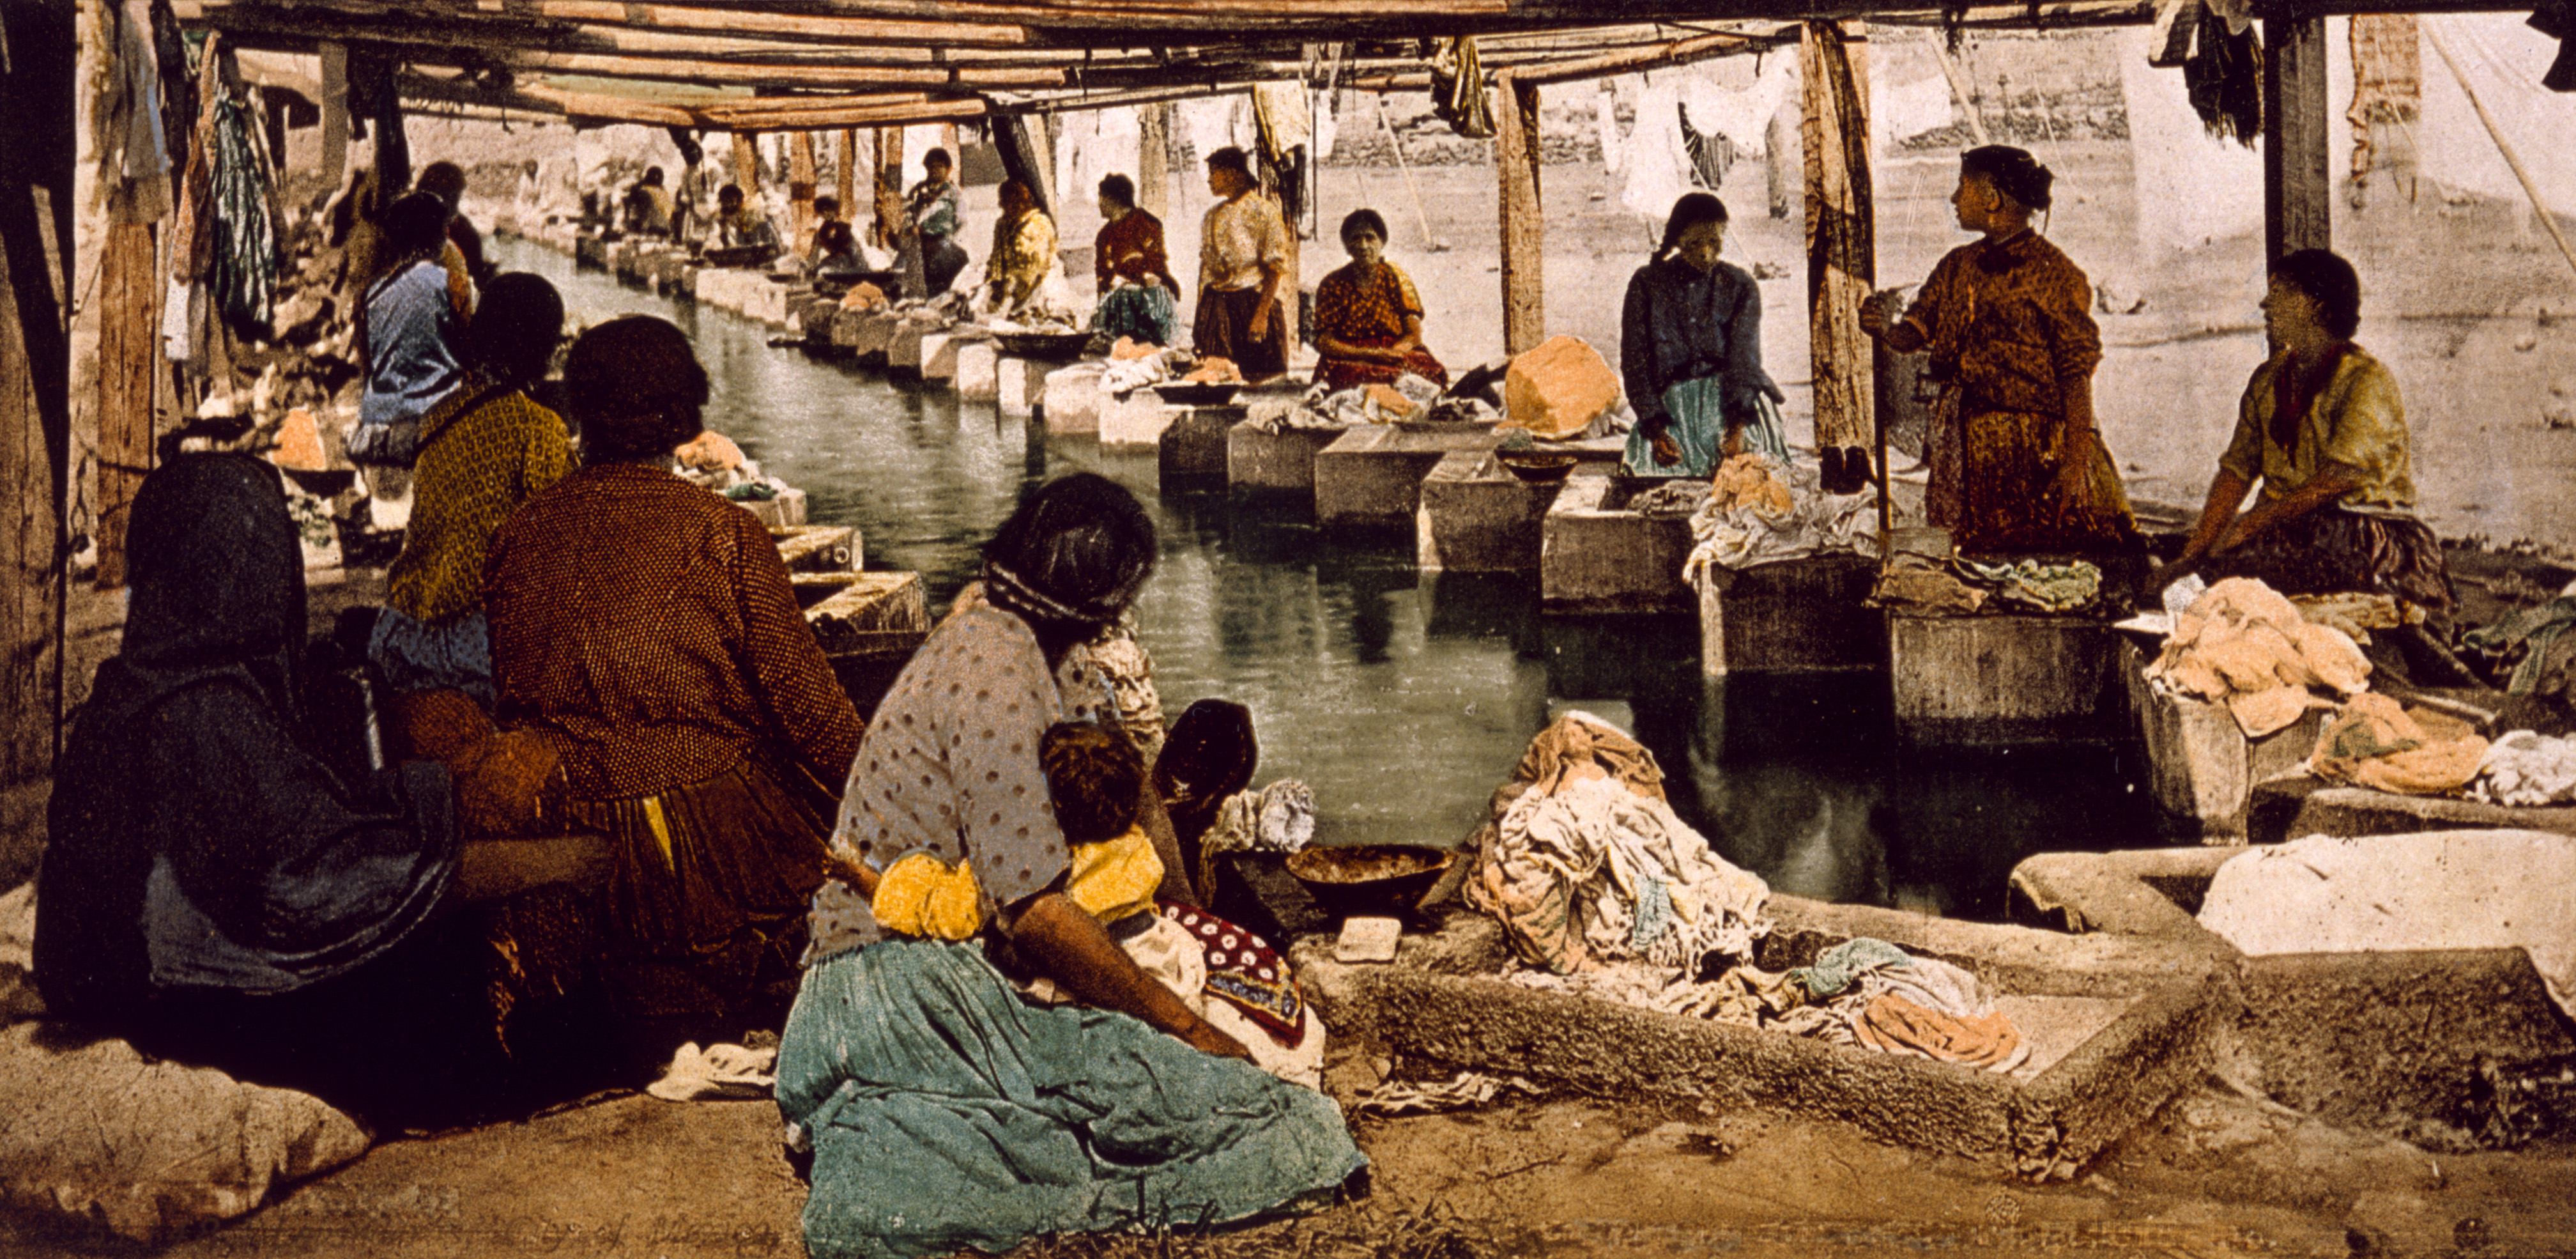 Flickr - вЂ¦trialsanderrors - Lavanderas, Mexico City, ca. 1900